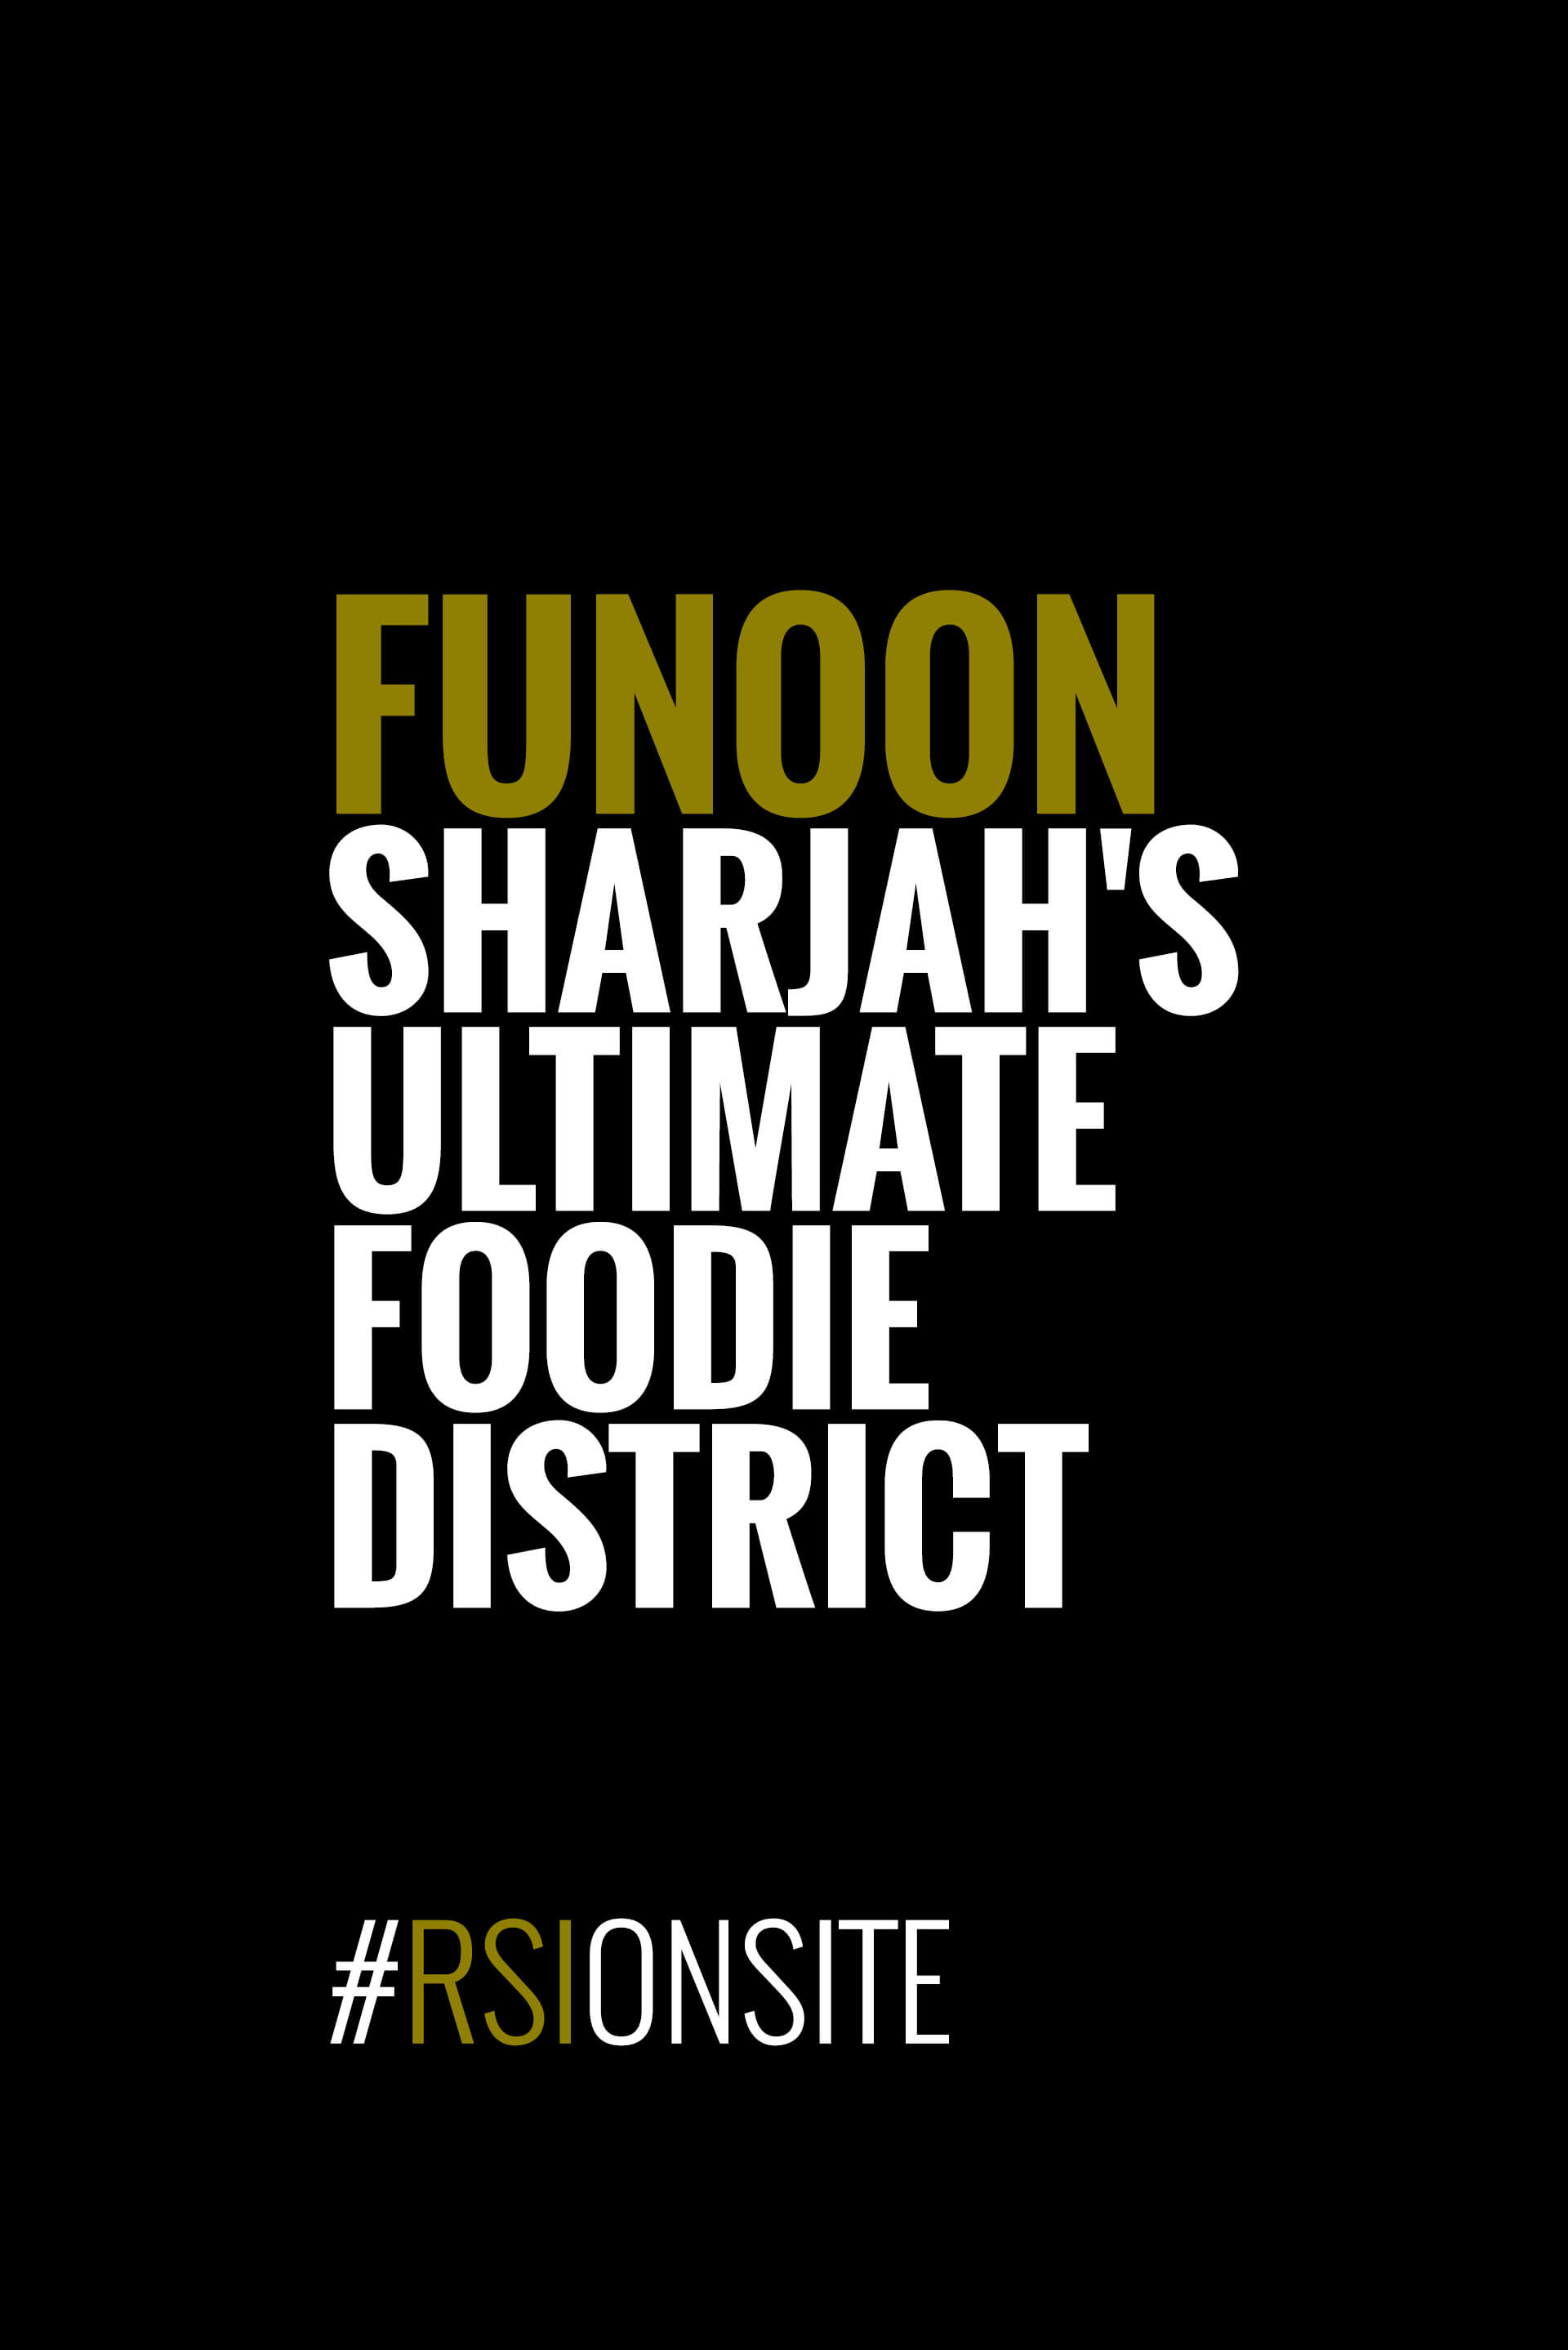 Funoon - Sharjah's ultimate foodie district